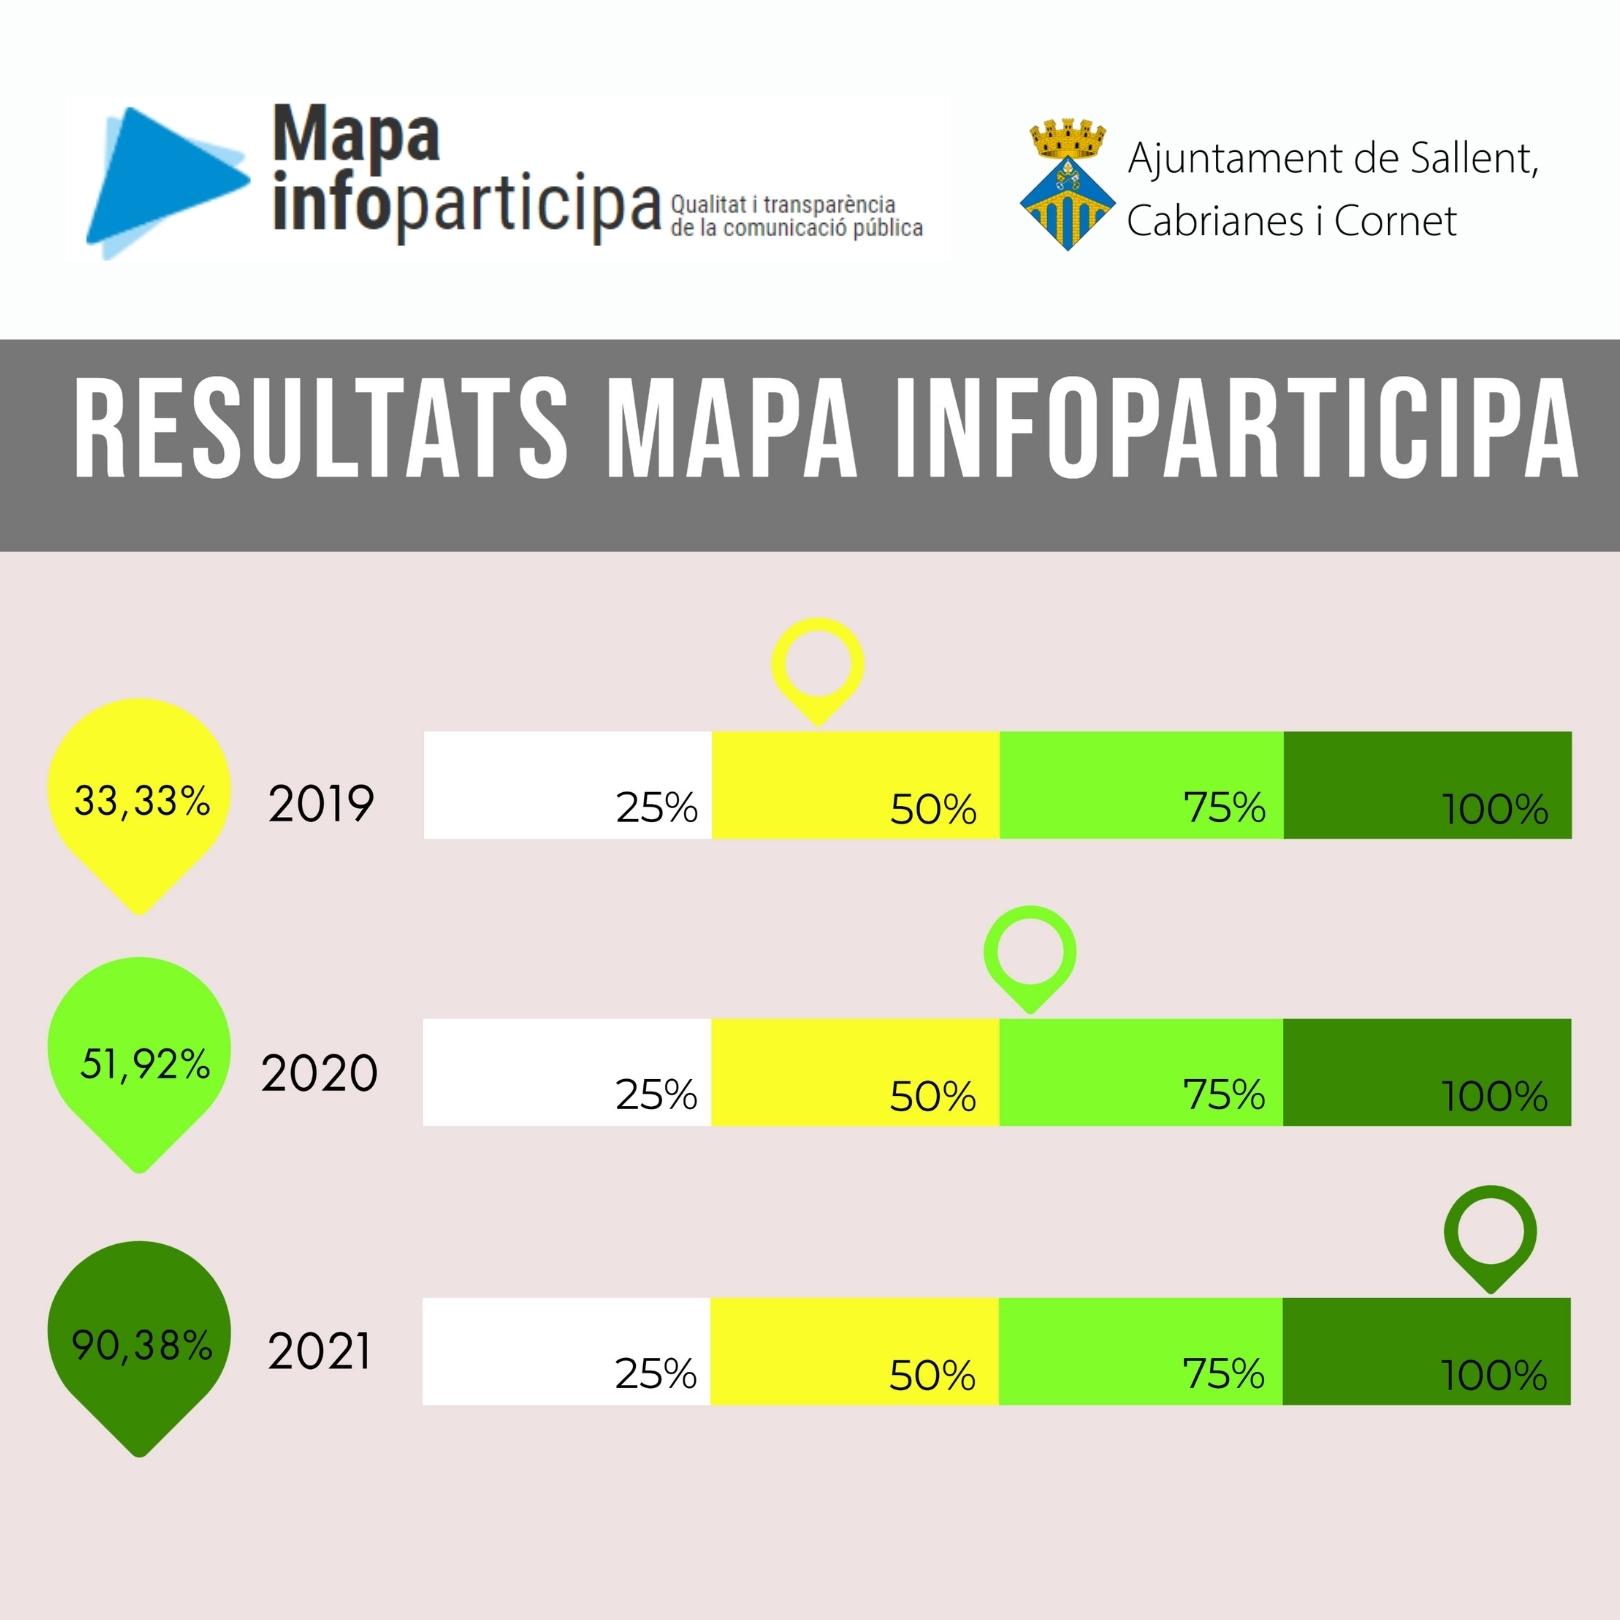 Resultats InfoParticipa de Sallent (percentatge de compliment dels indicadors de transparència)